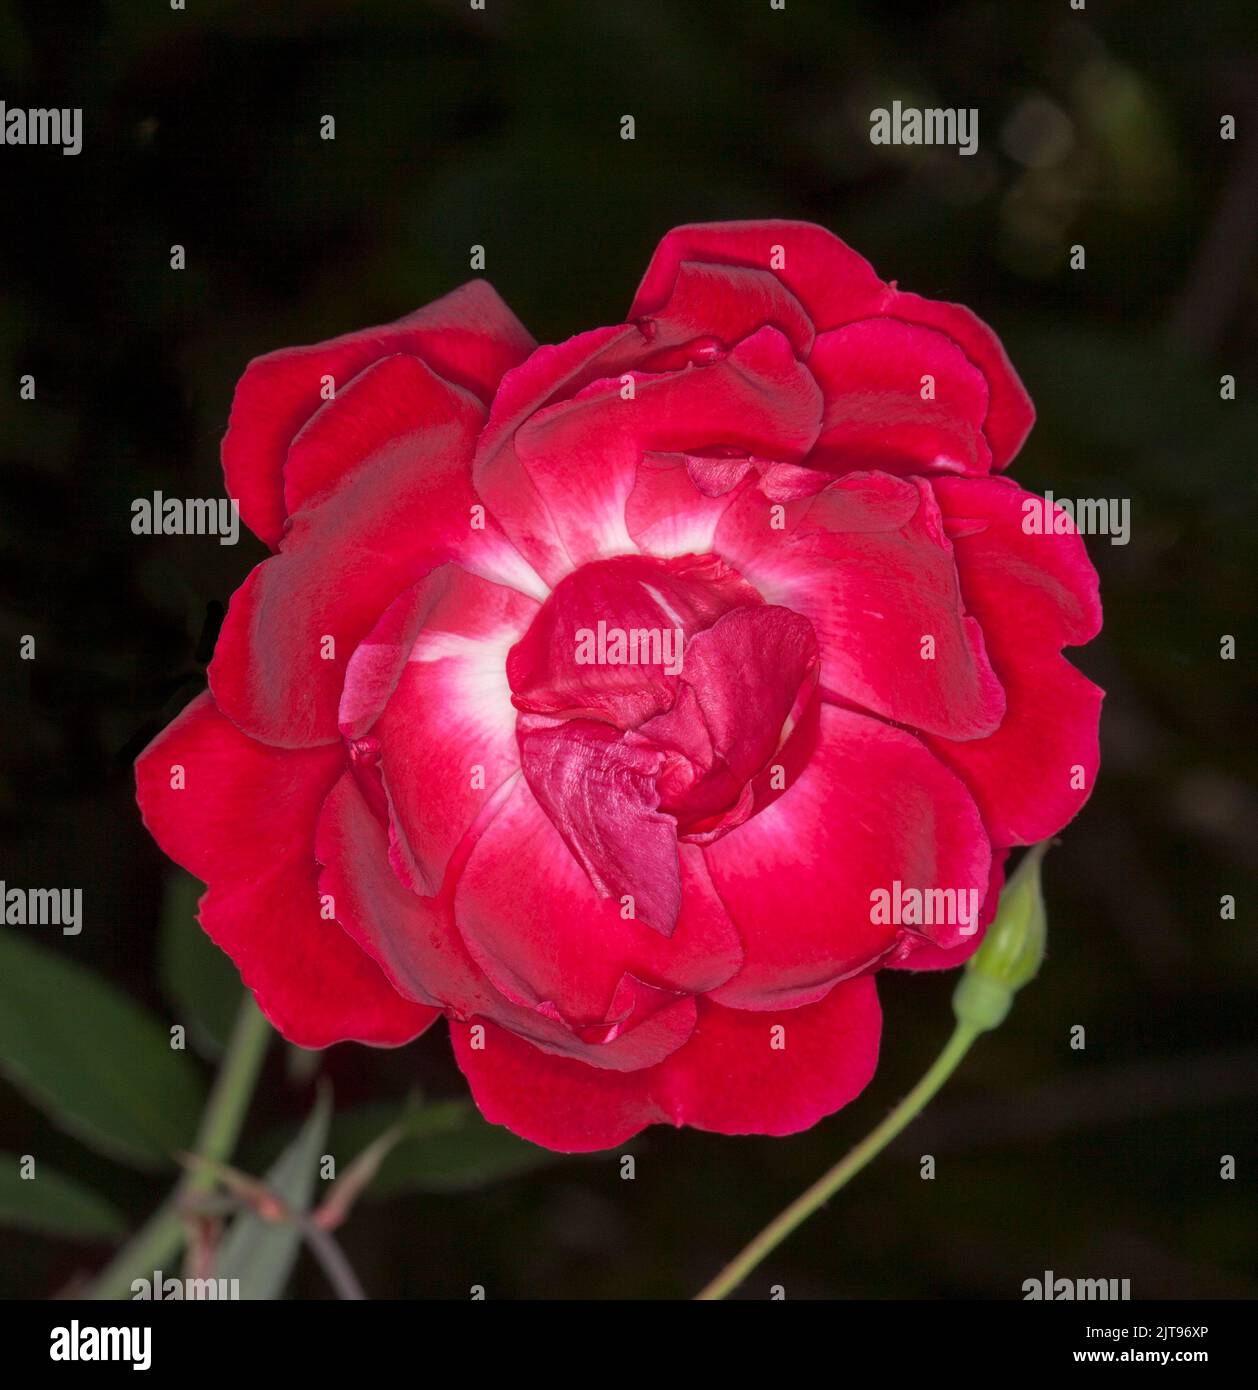 Spectaculaire fleur rouge vif parfumée d'une rose, avec une teinte blanche au centre des pétales, sur fond sombre, en Australie Banque D'Images